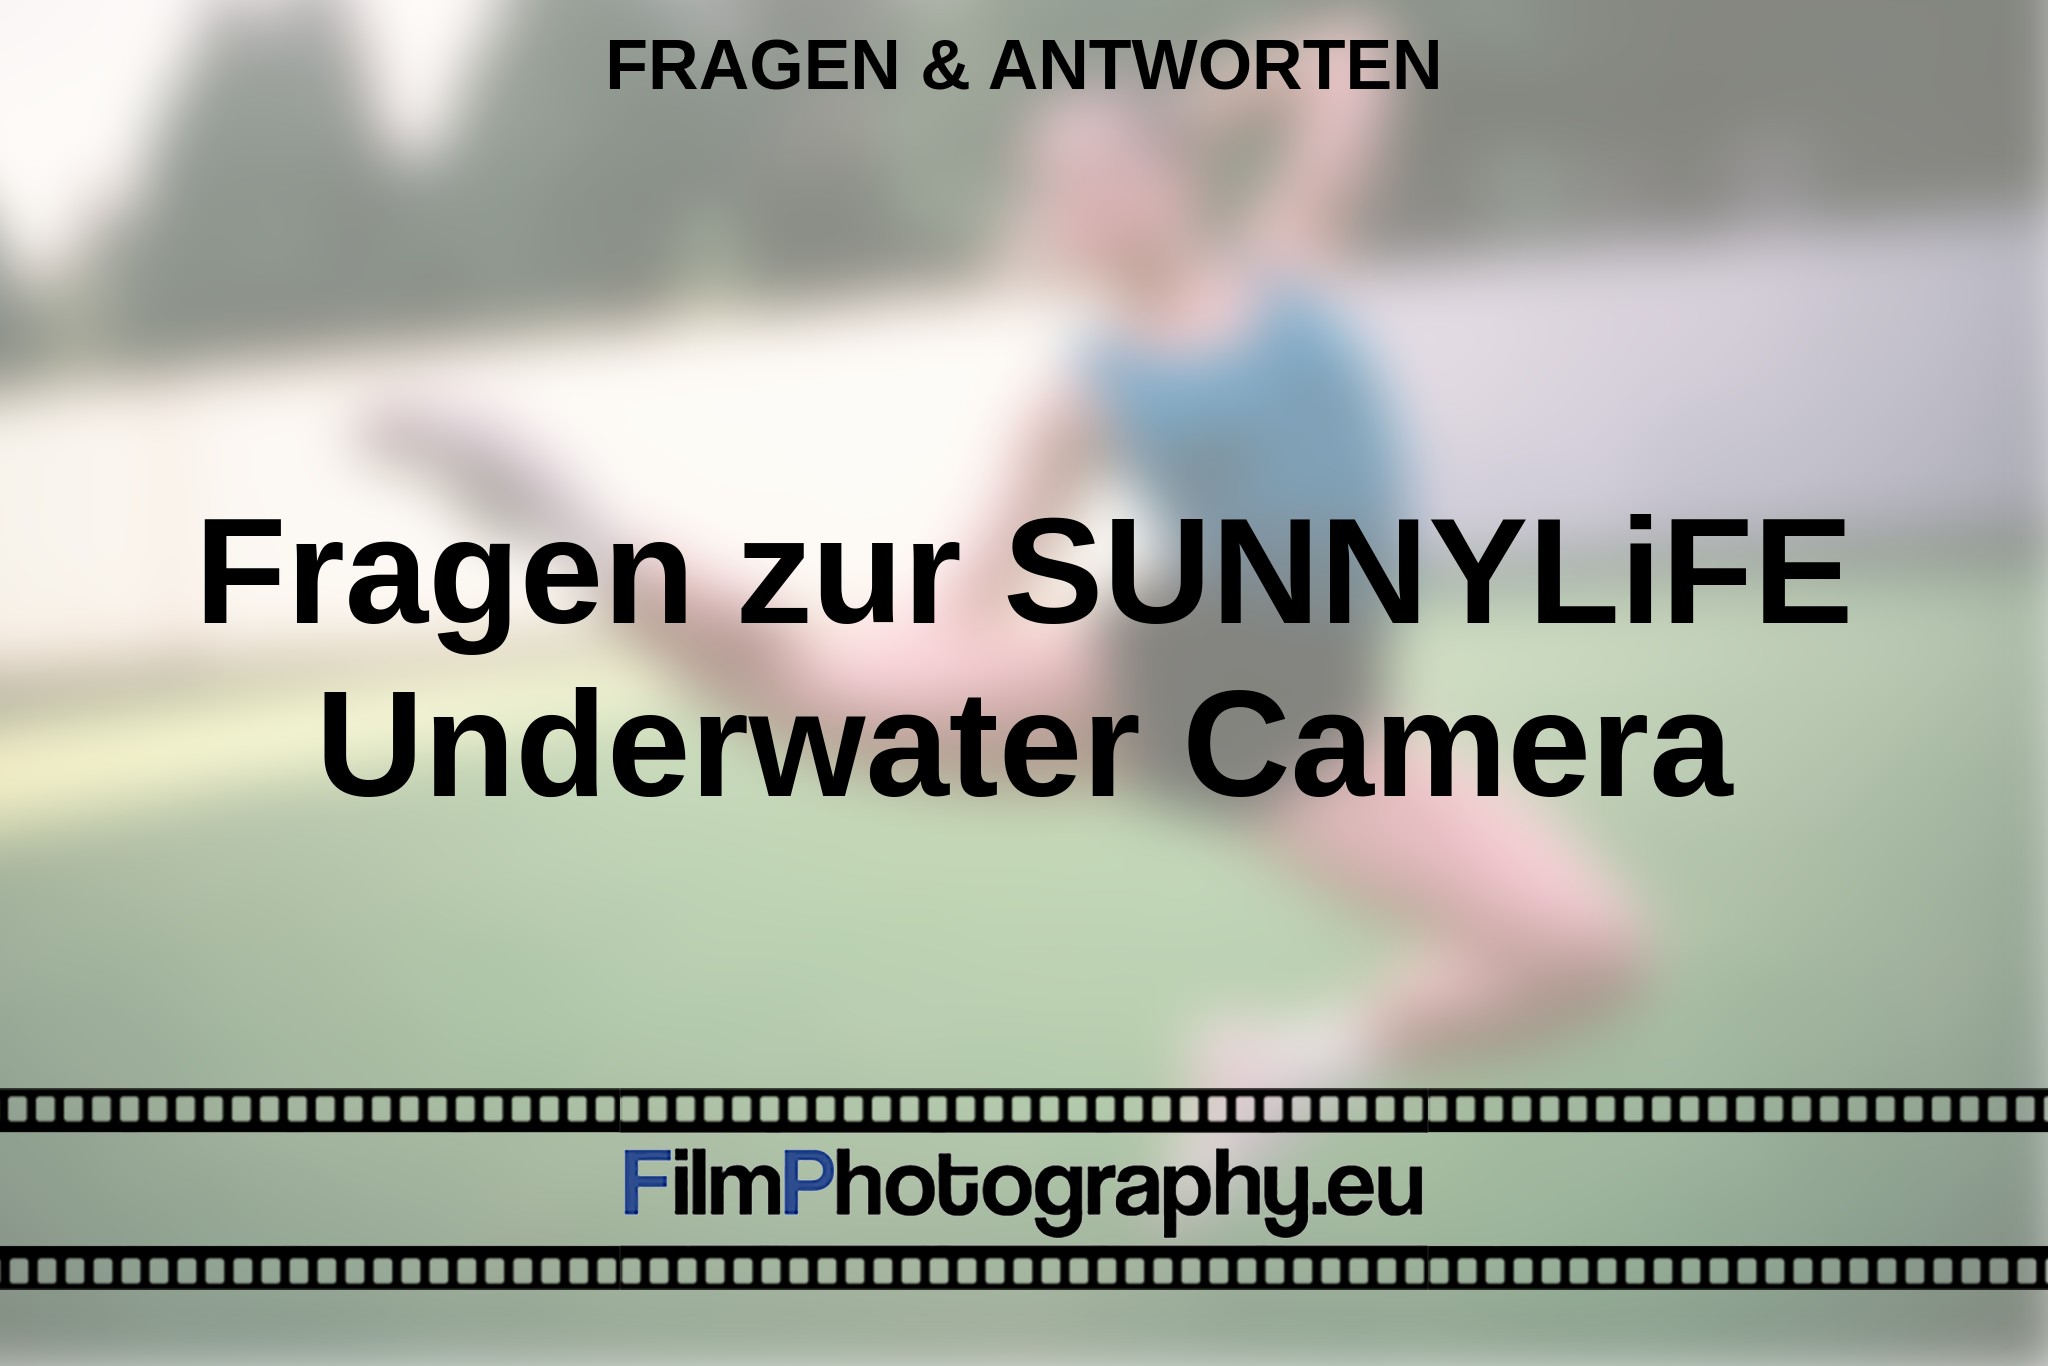 fragen-zur-sunnylife-underwater-camera-fragen-antworten-bnv.jpg